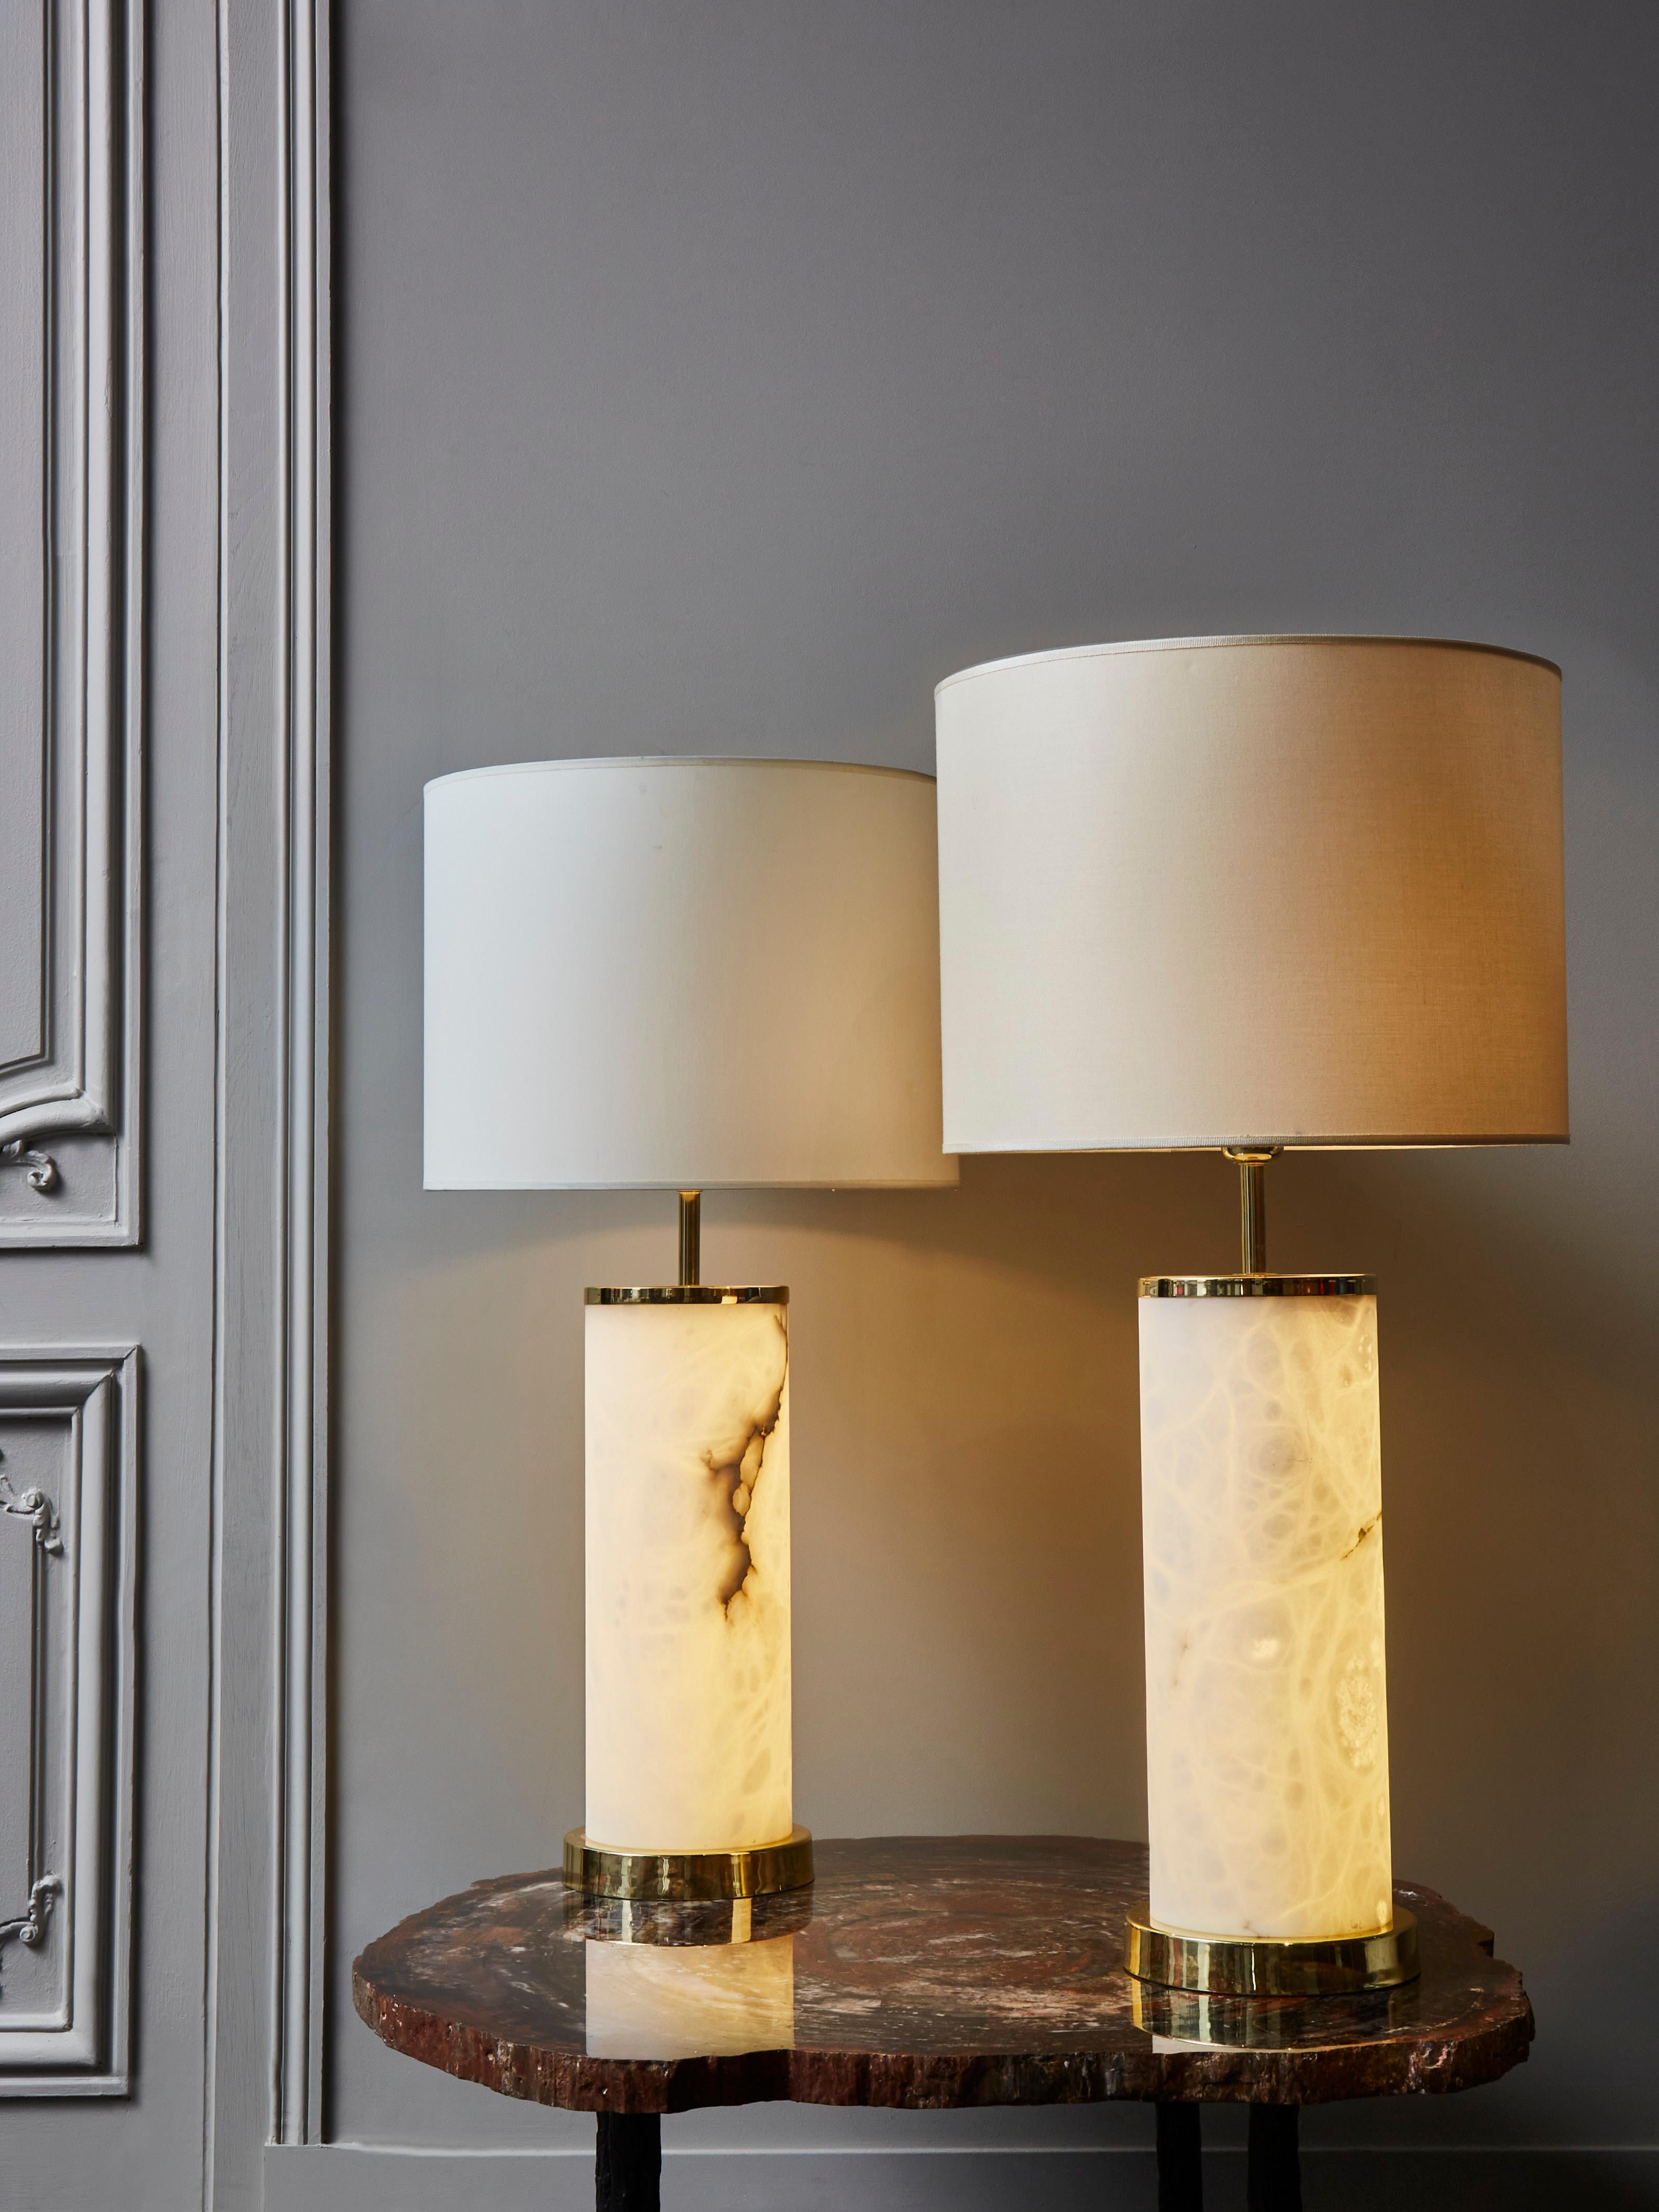 Paire de lampes de table en laiton et albâtre par Glustin Luminaires.

Grands cylindres d'albâtre éclairés, soutenus par des pieds et un anneau supérieur en albâtre.